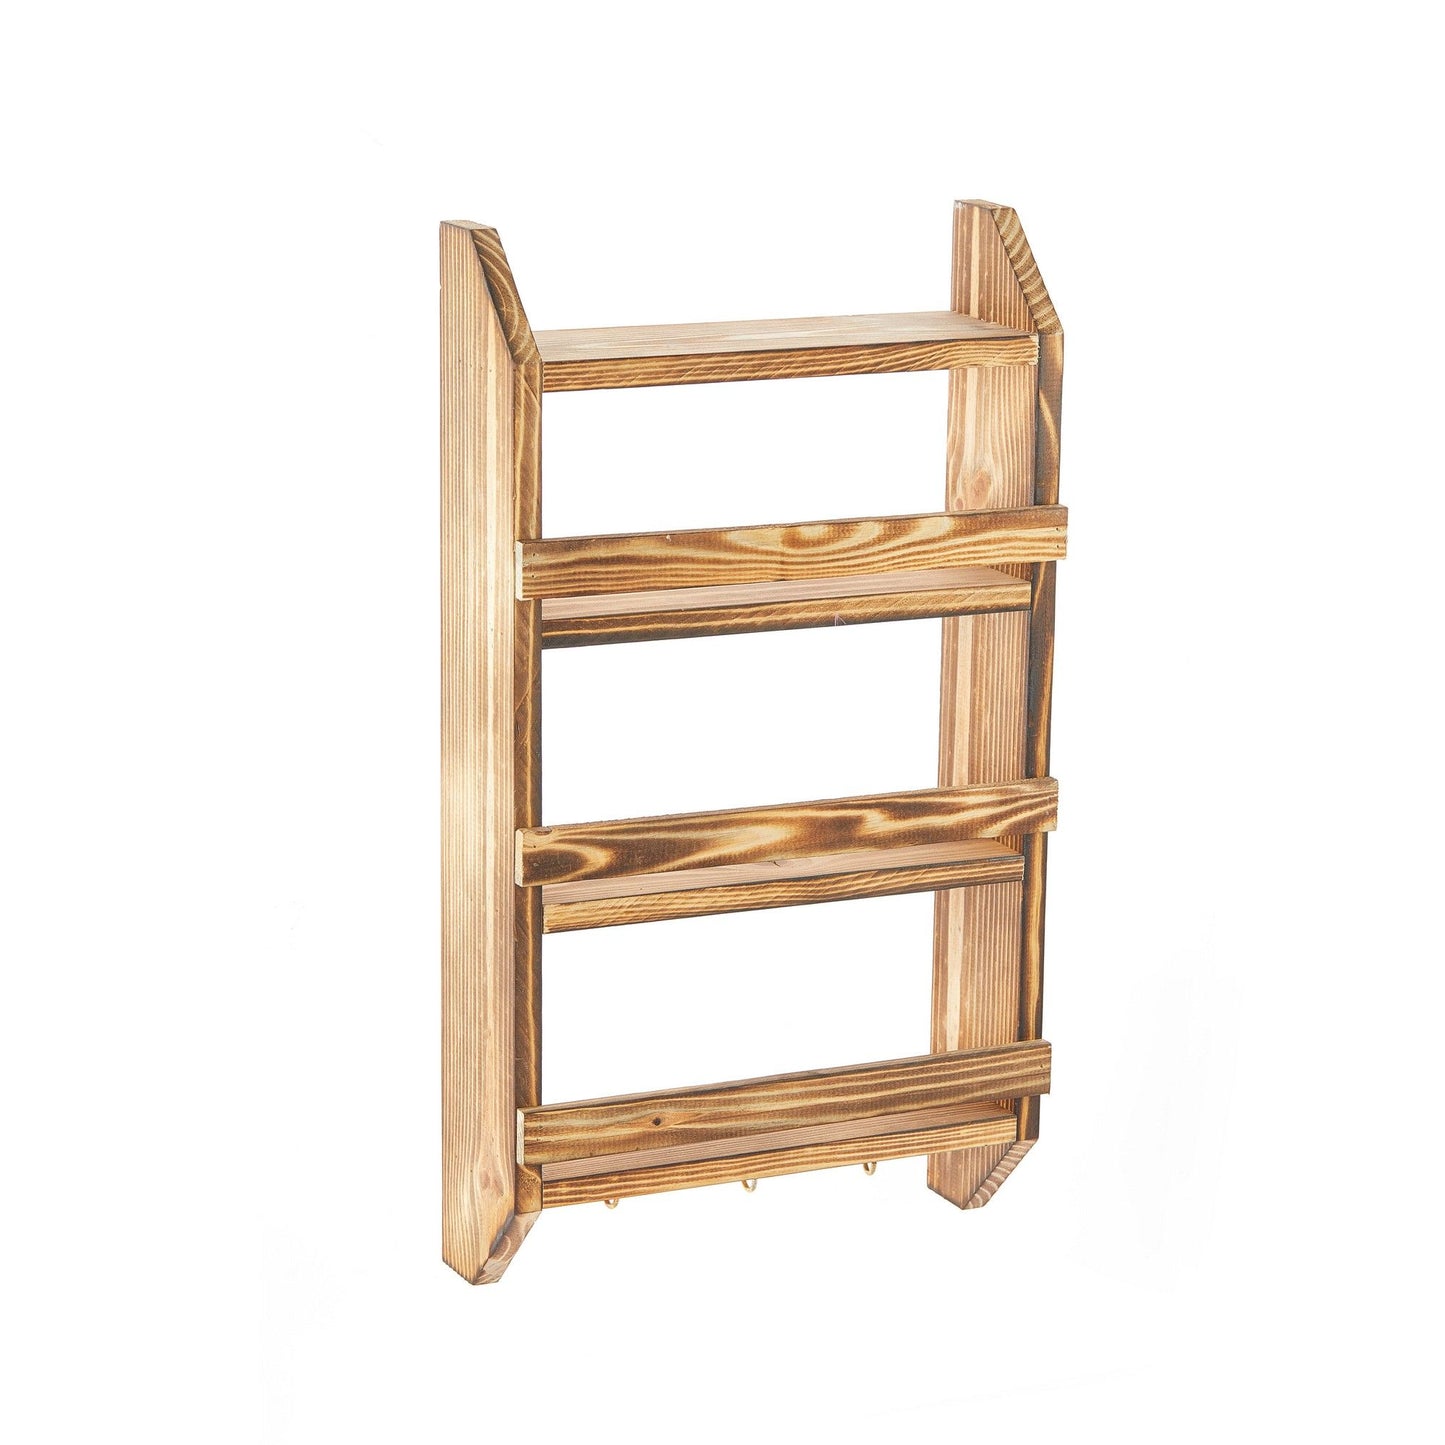 Shelf Hook - Wooden Shelf